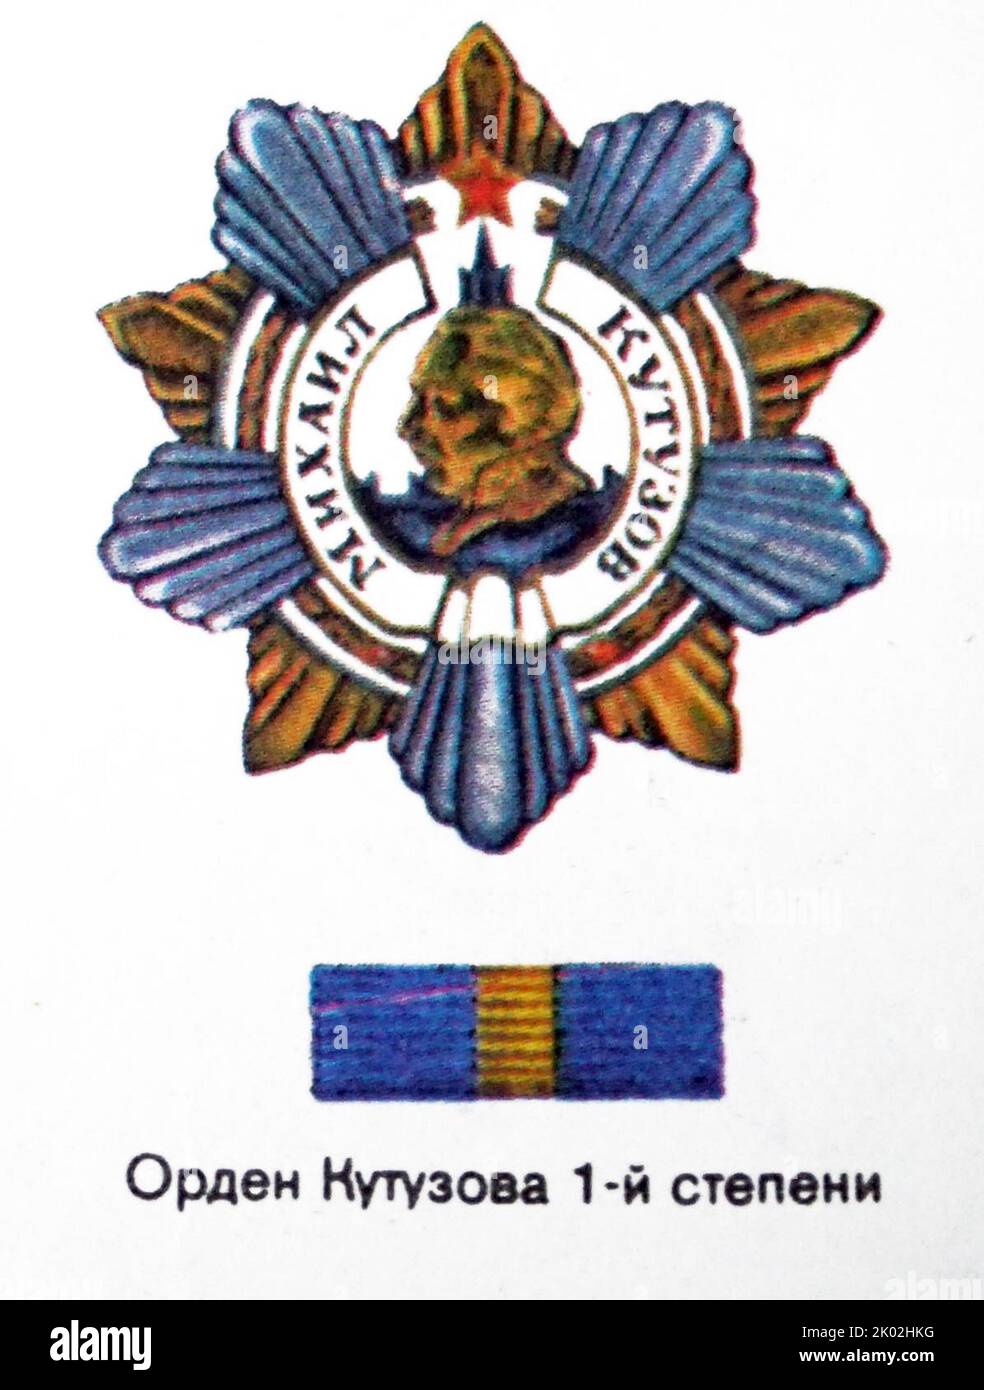 Der Orden von Kutusow ist eine militärische Dekoration der Russischen Föderation, benannt nach dem berühmten russischen Feldmarschall Michail Illarionowitsch Kutusow (1745-1813). Der Orden wurde während des Zweiten Weltkriegs gegründet, um hochrangige Offiziere der Roten Armee zu belohnen Stockfoto